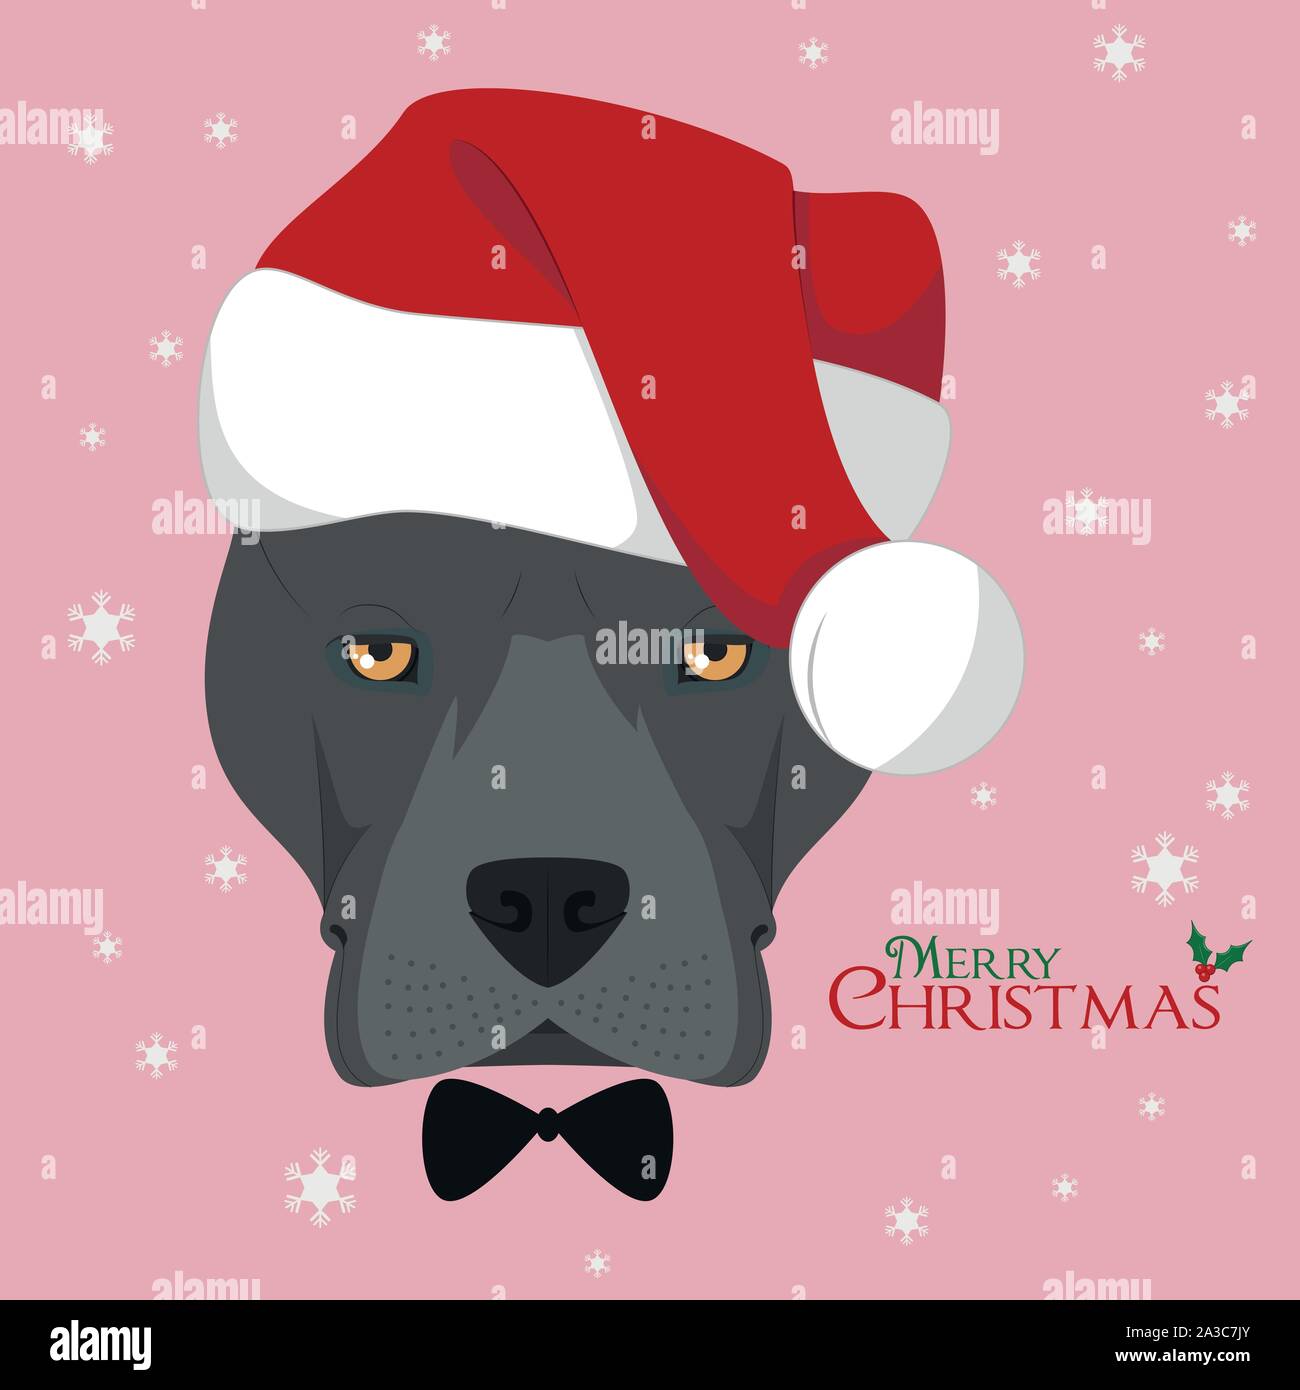 Carte de vœux de Noël. American Staffordshire Terrier chien avec rouge Santa's hat Illustration de Vecteur